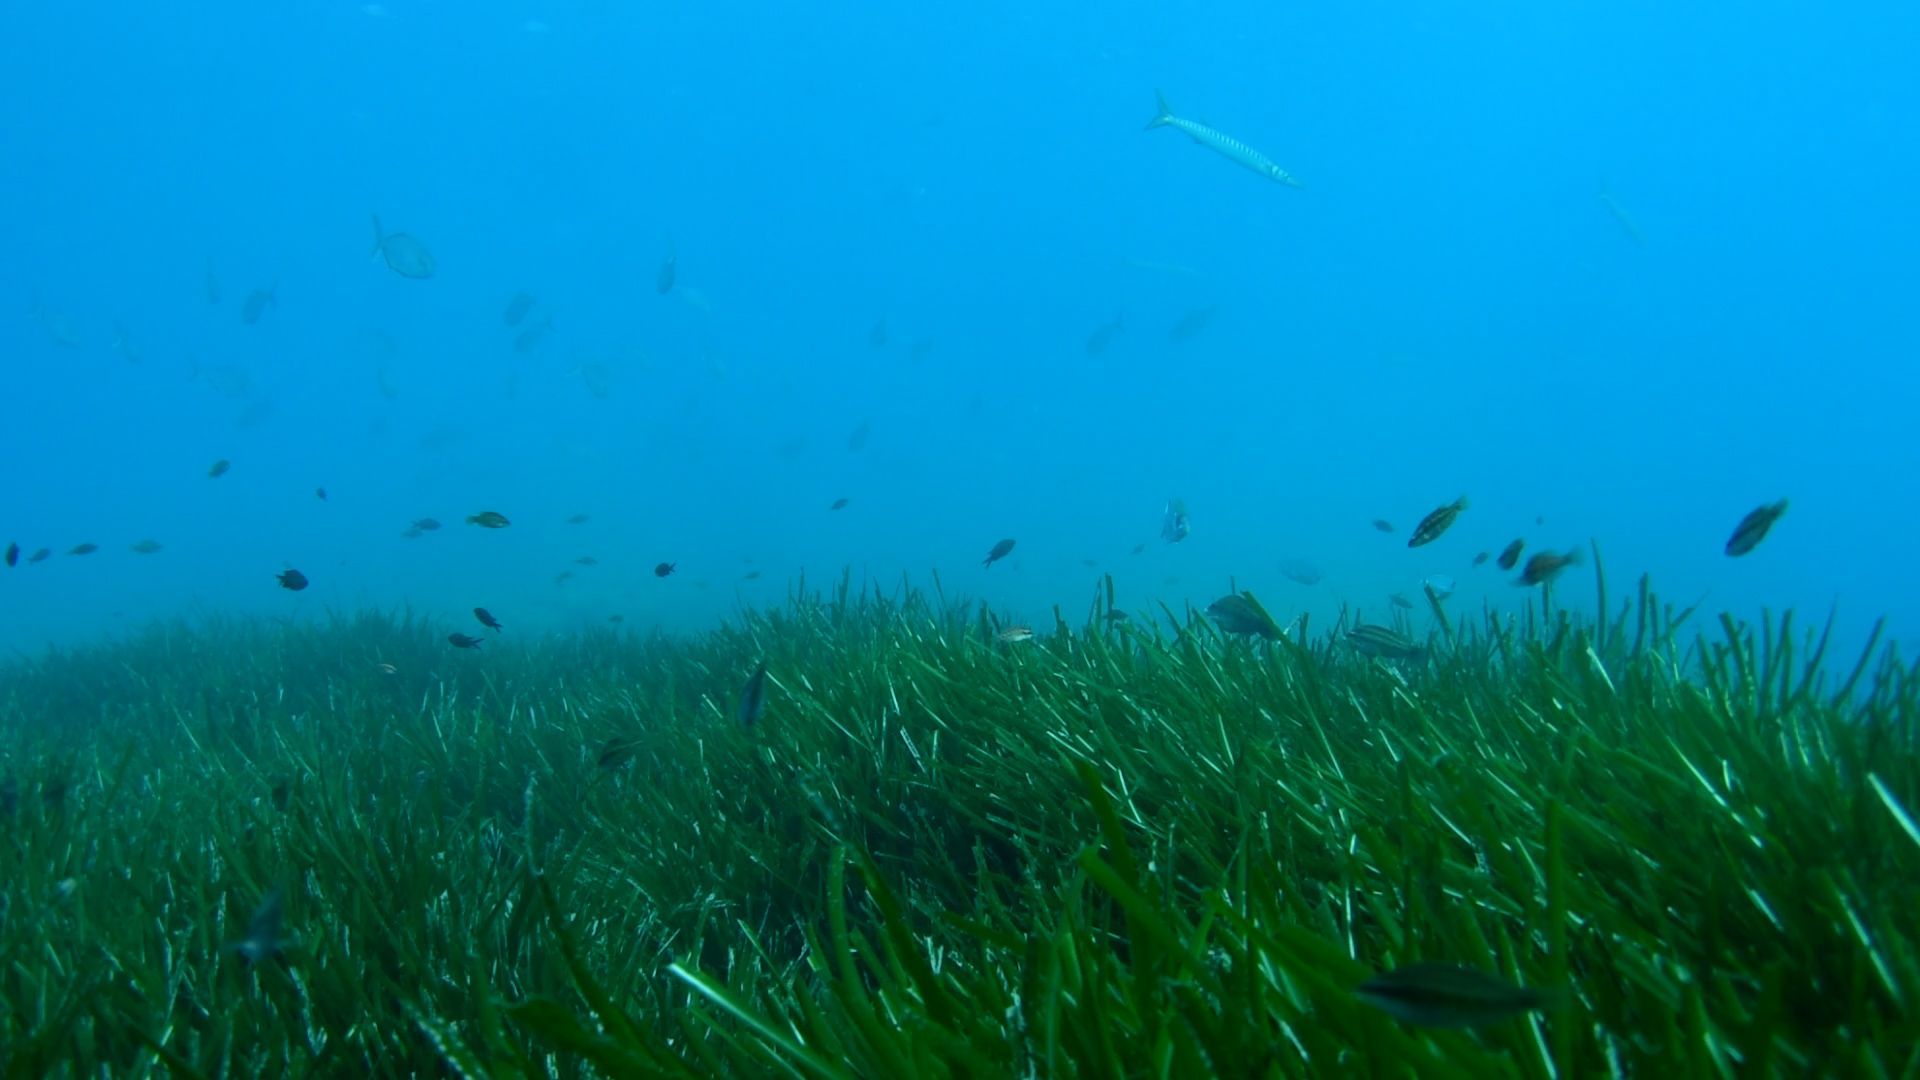 Sie sorgt für ein sauberes Meer vor Mallorca: So sieht die Neptungraswiese vor Illetes aus